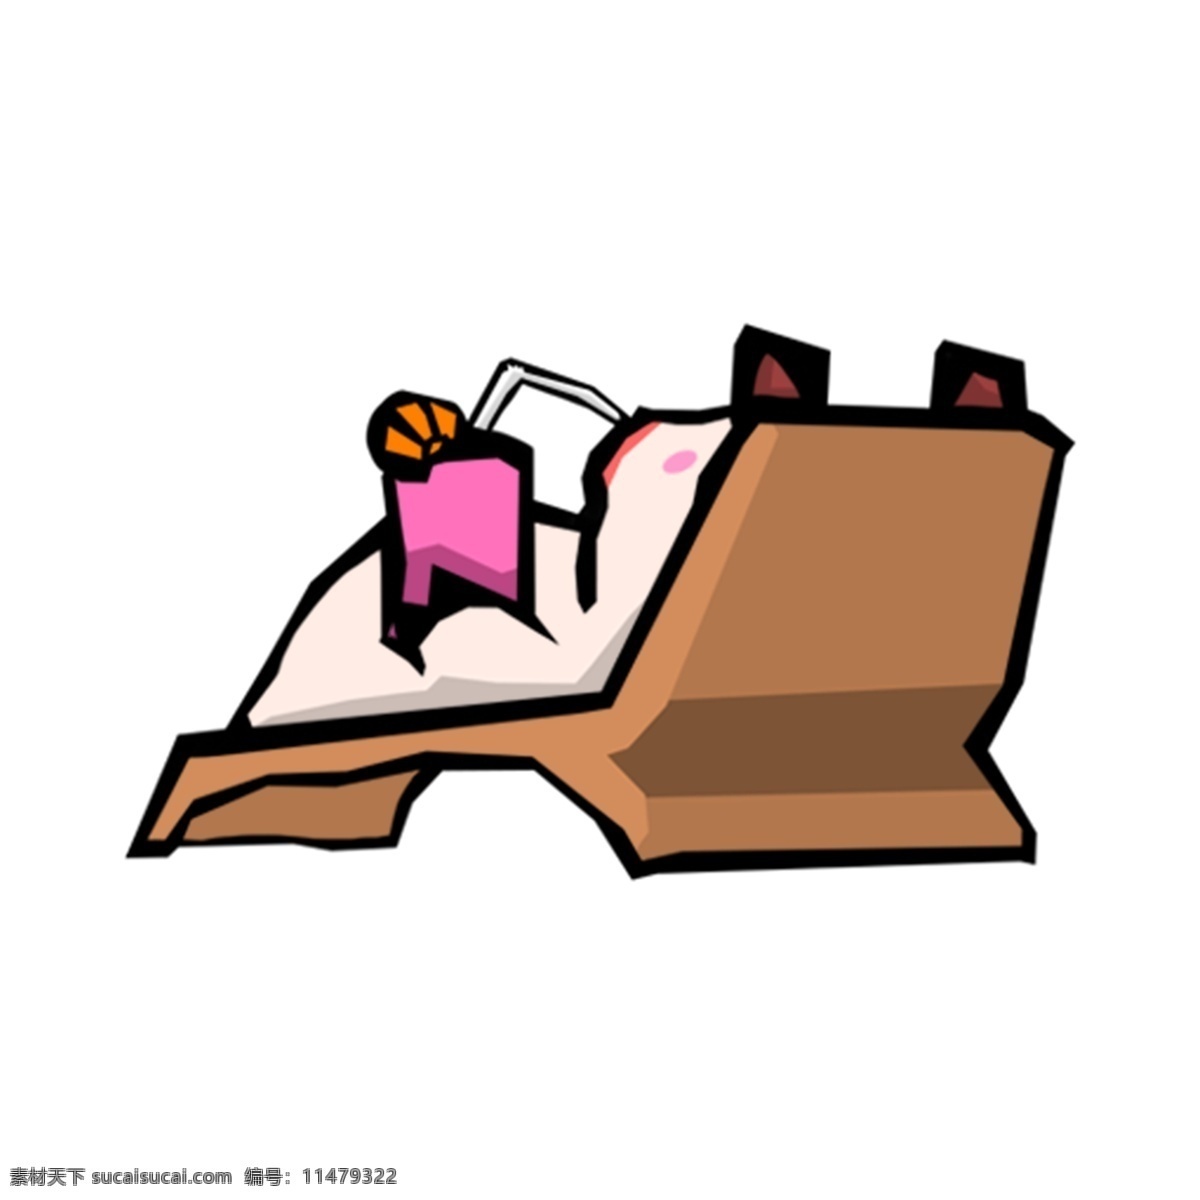 猪年 生肖 2019 可爱 小 猪 躺椅 卡通 ps 猪年生肖 可爱卡通 ps素材 小猪躺椅